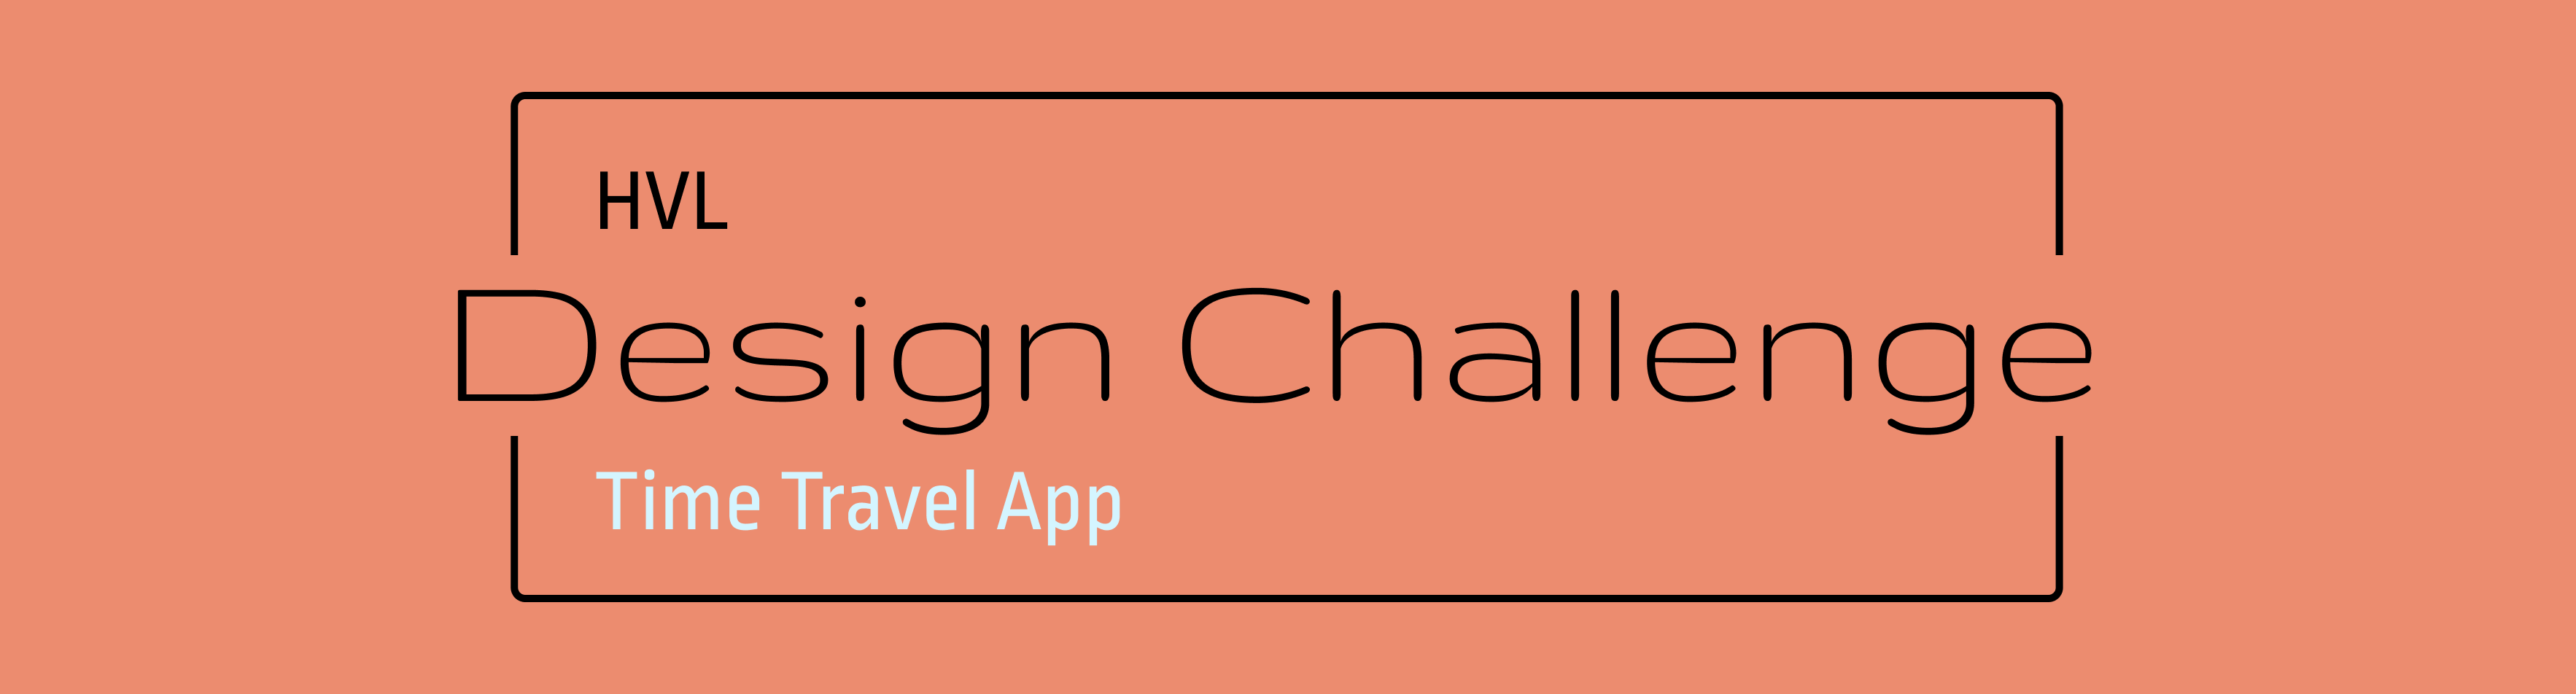 Banner for HVL Design Challenge